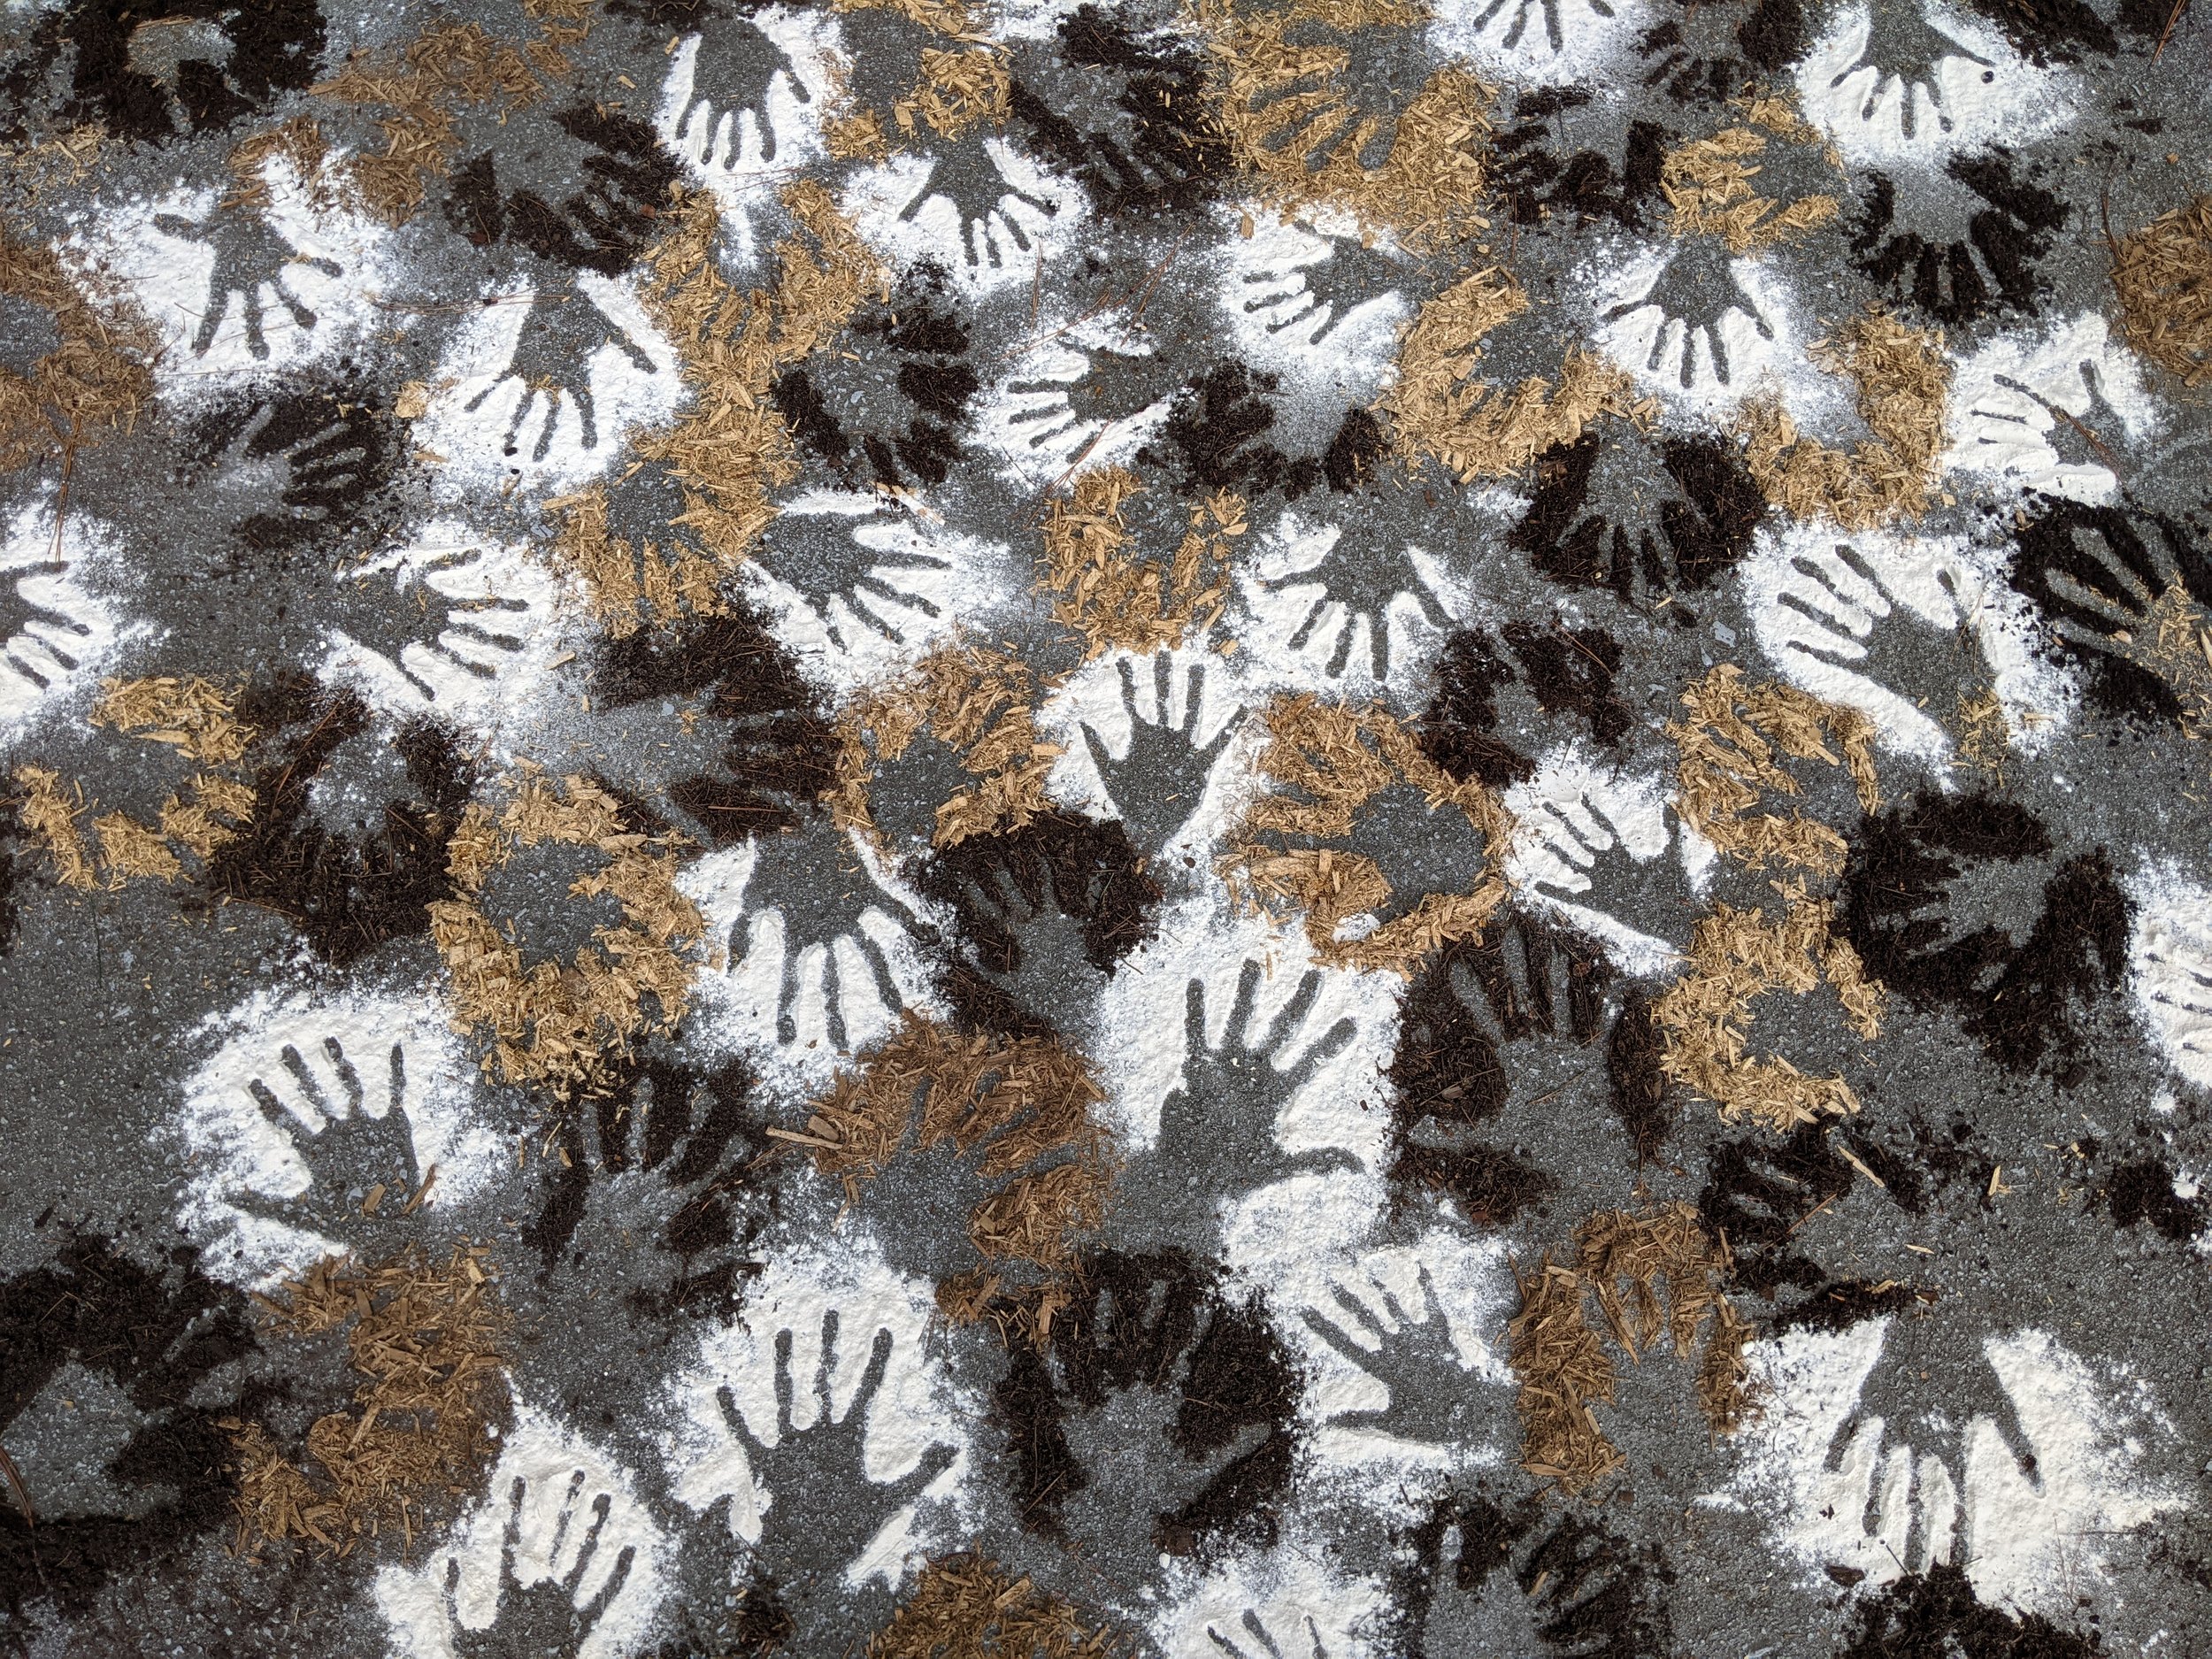 Hands (after Cueva de las Manos)